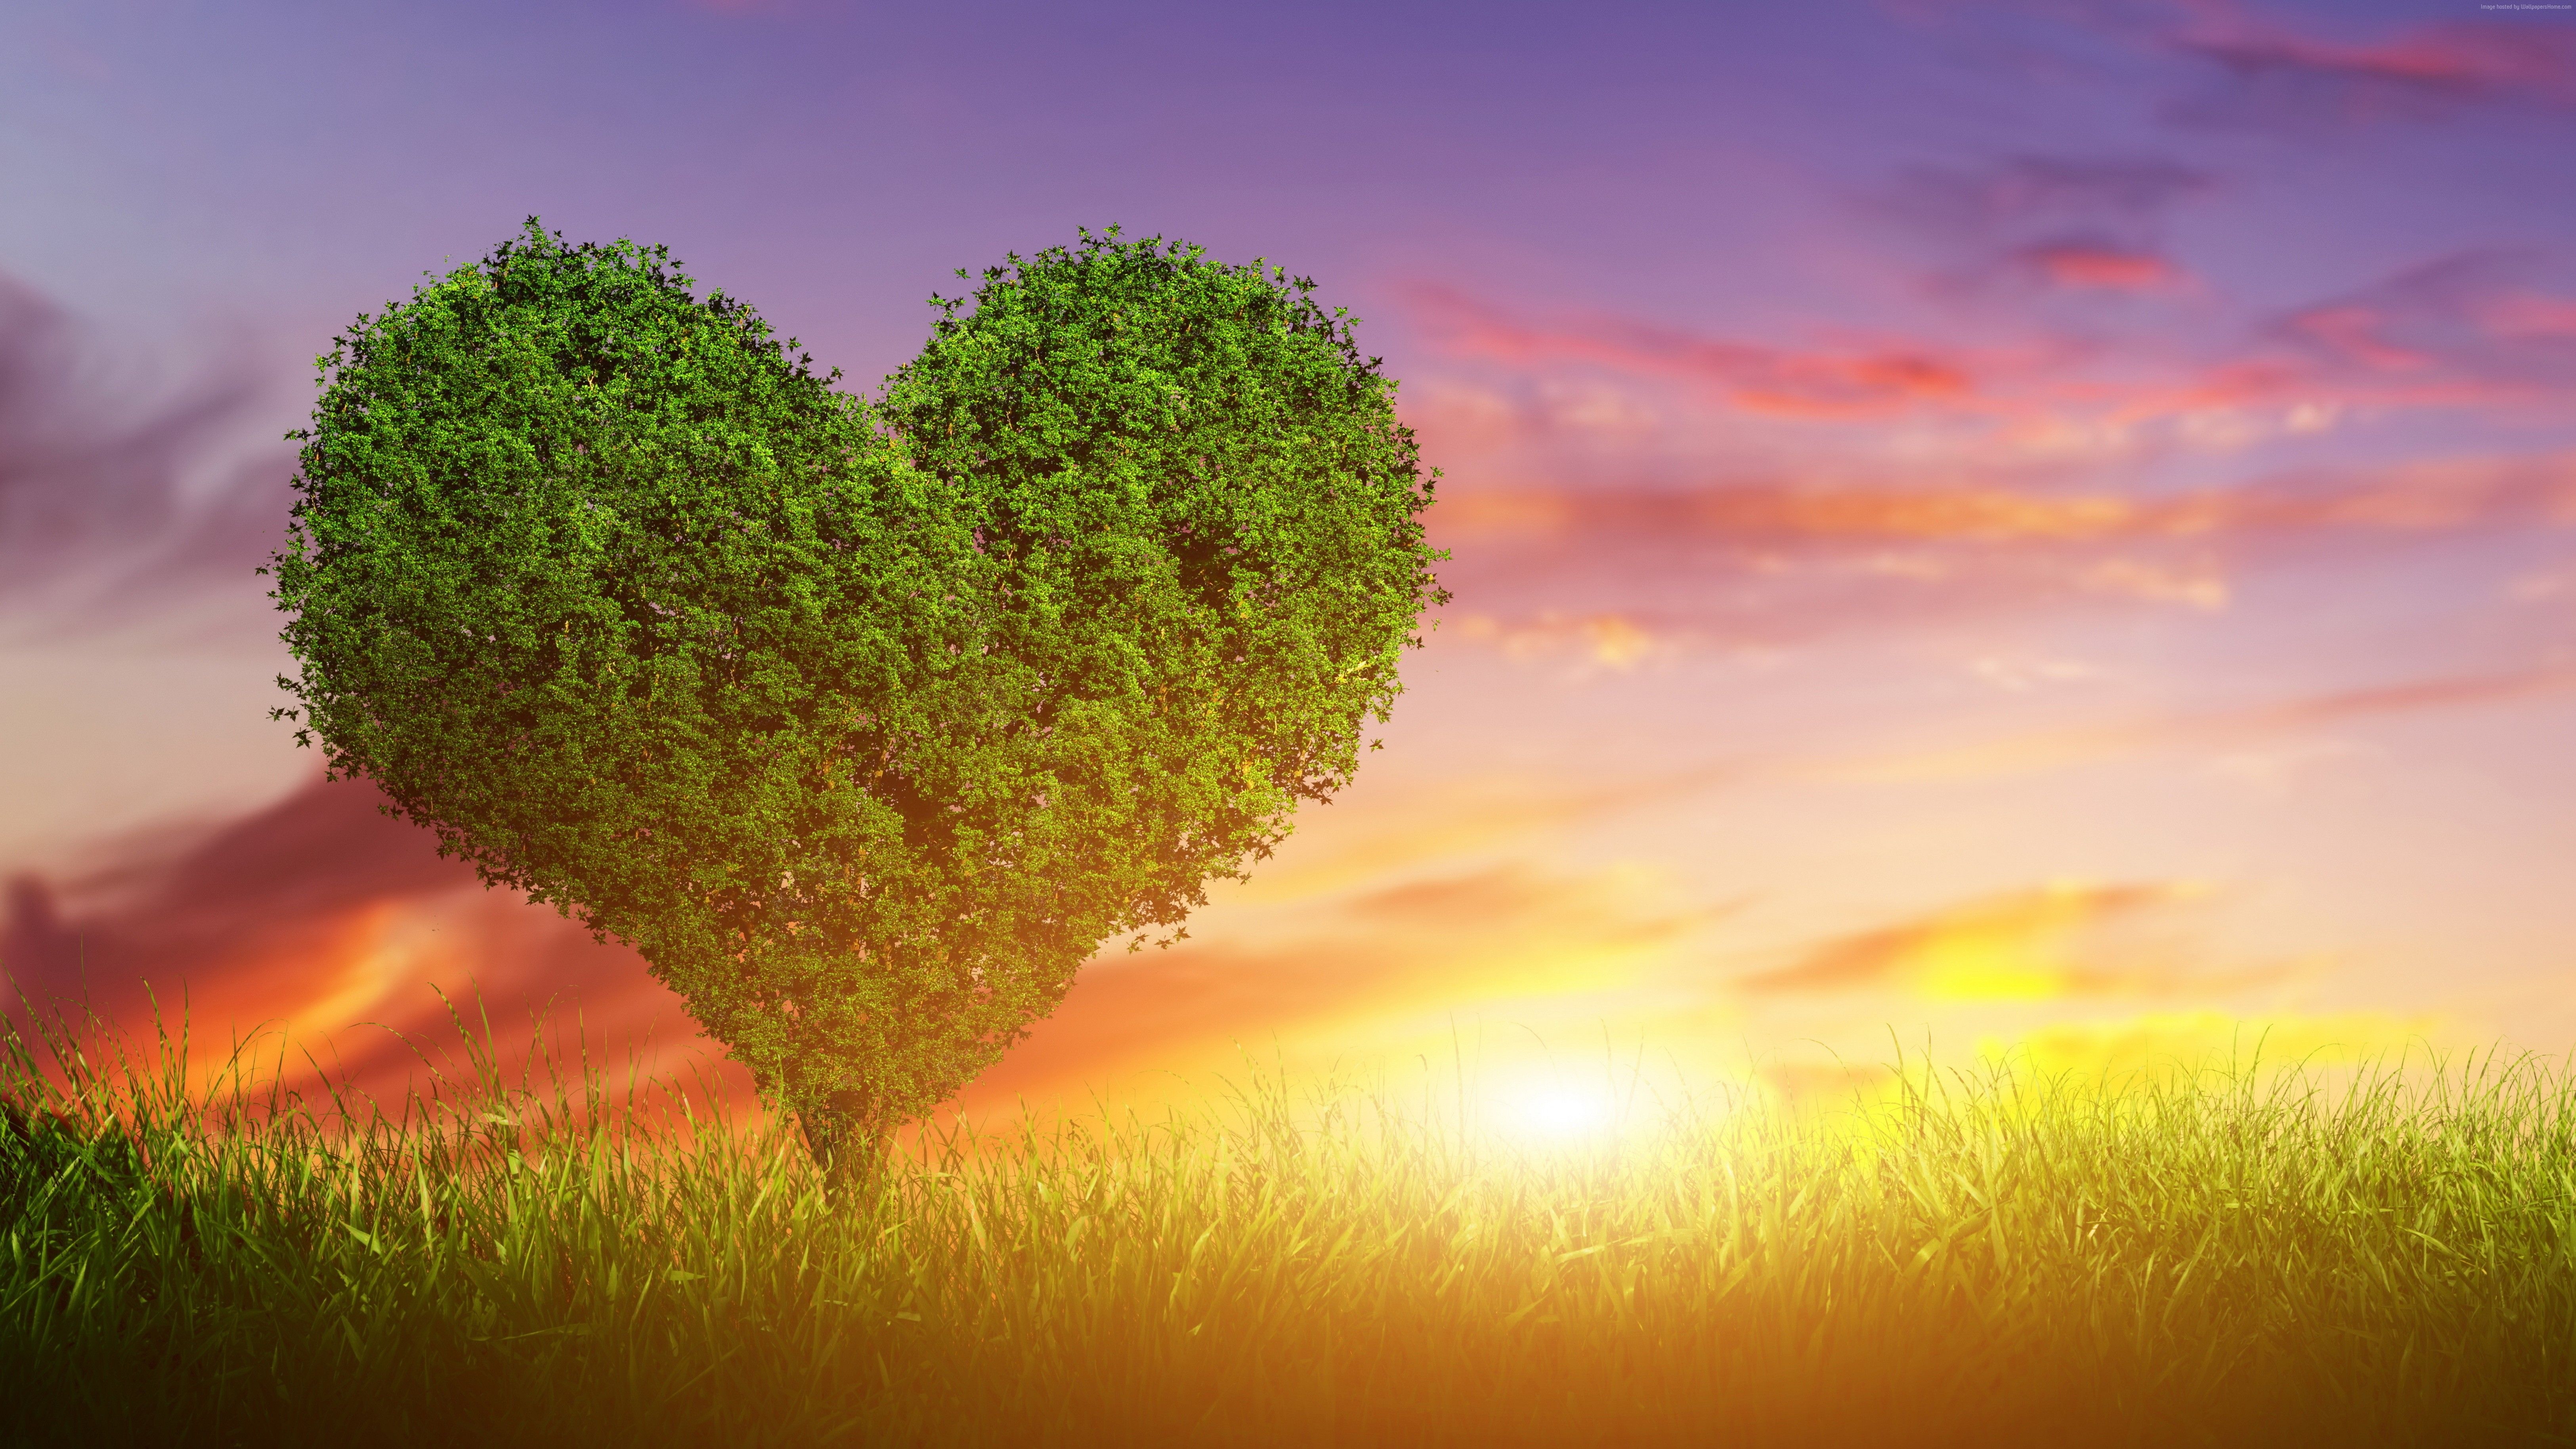 #love image, #heart, K, #tree